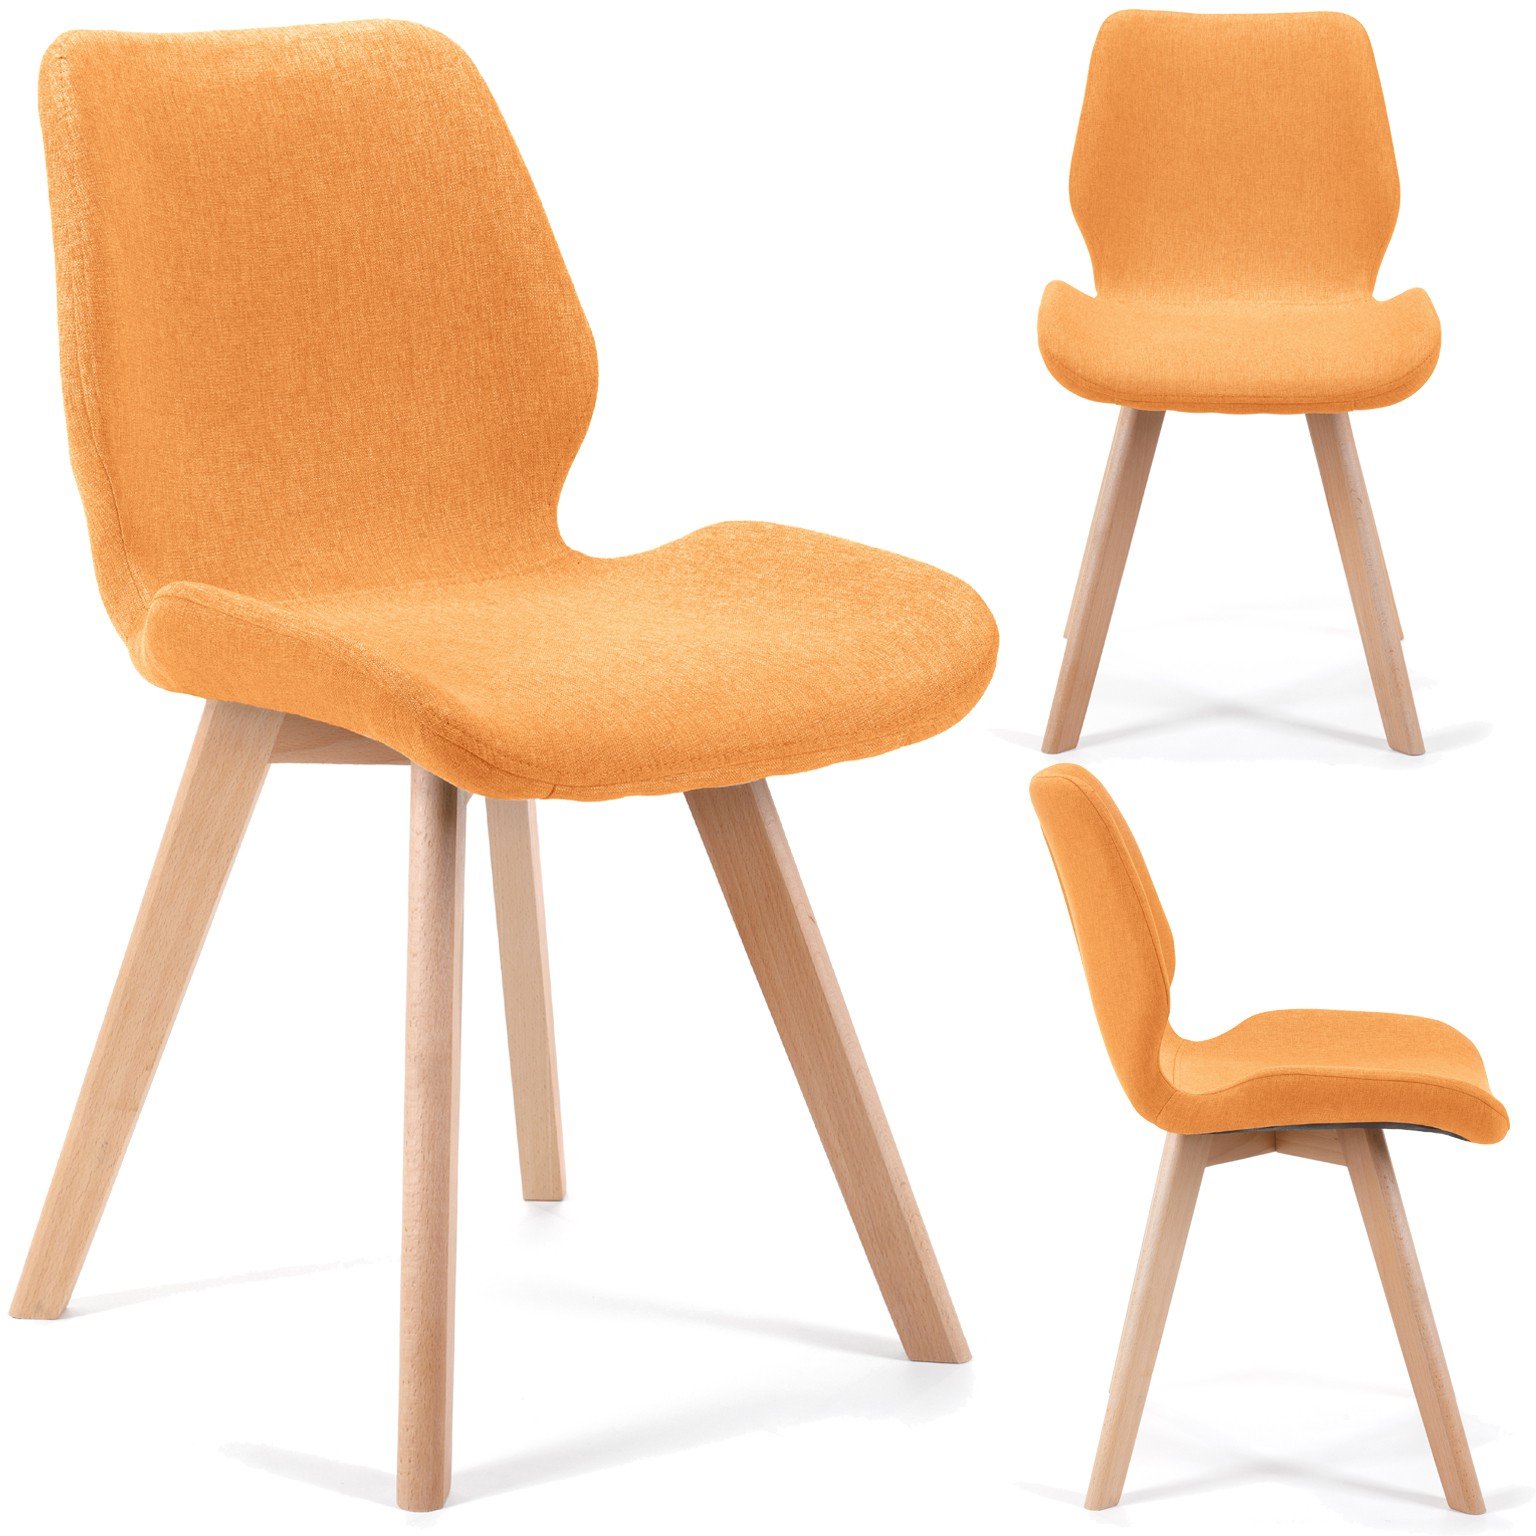 4-rių kėdžių komplektas SJ.0159, oranžinis - 6